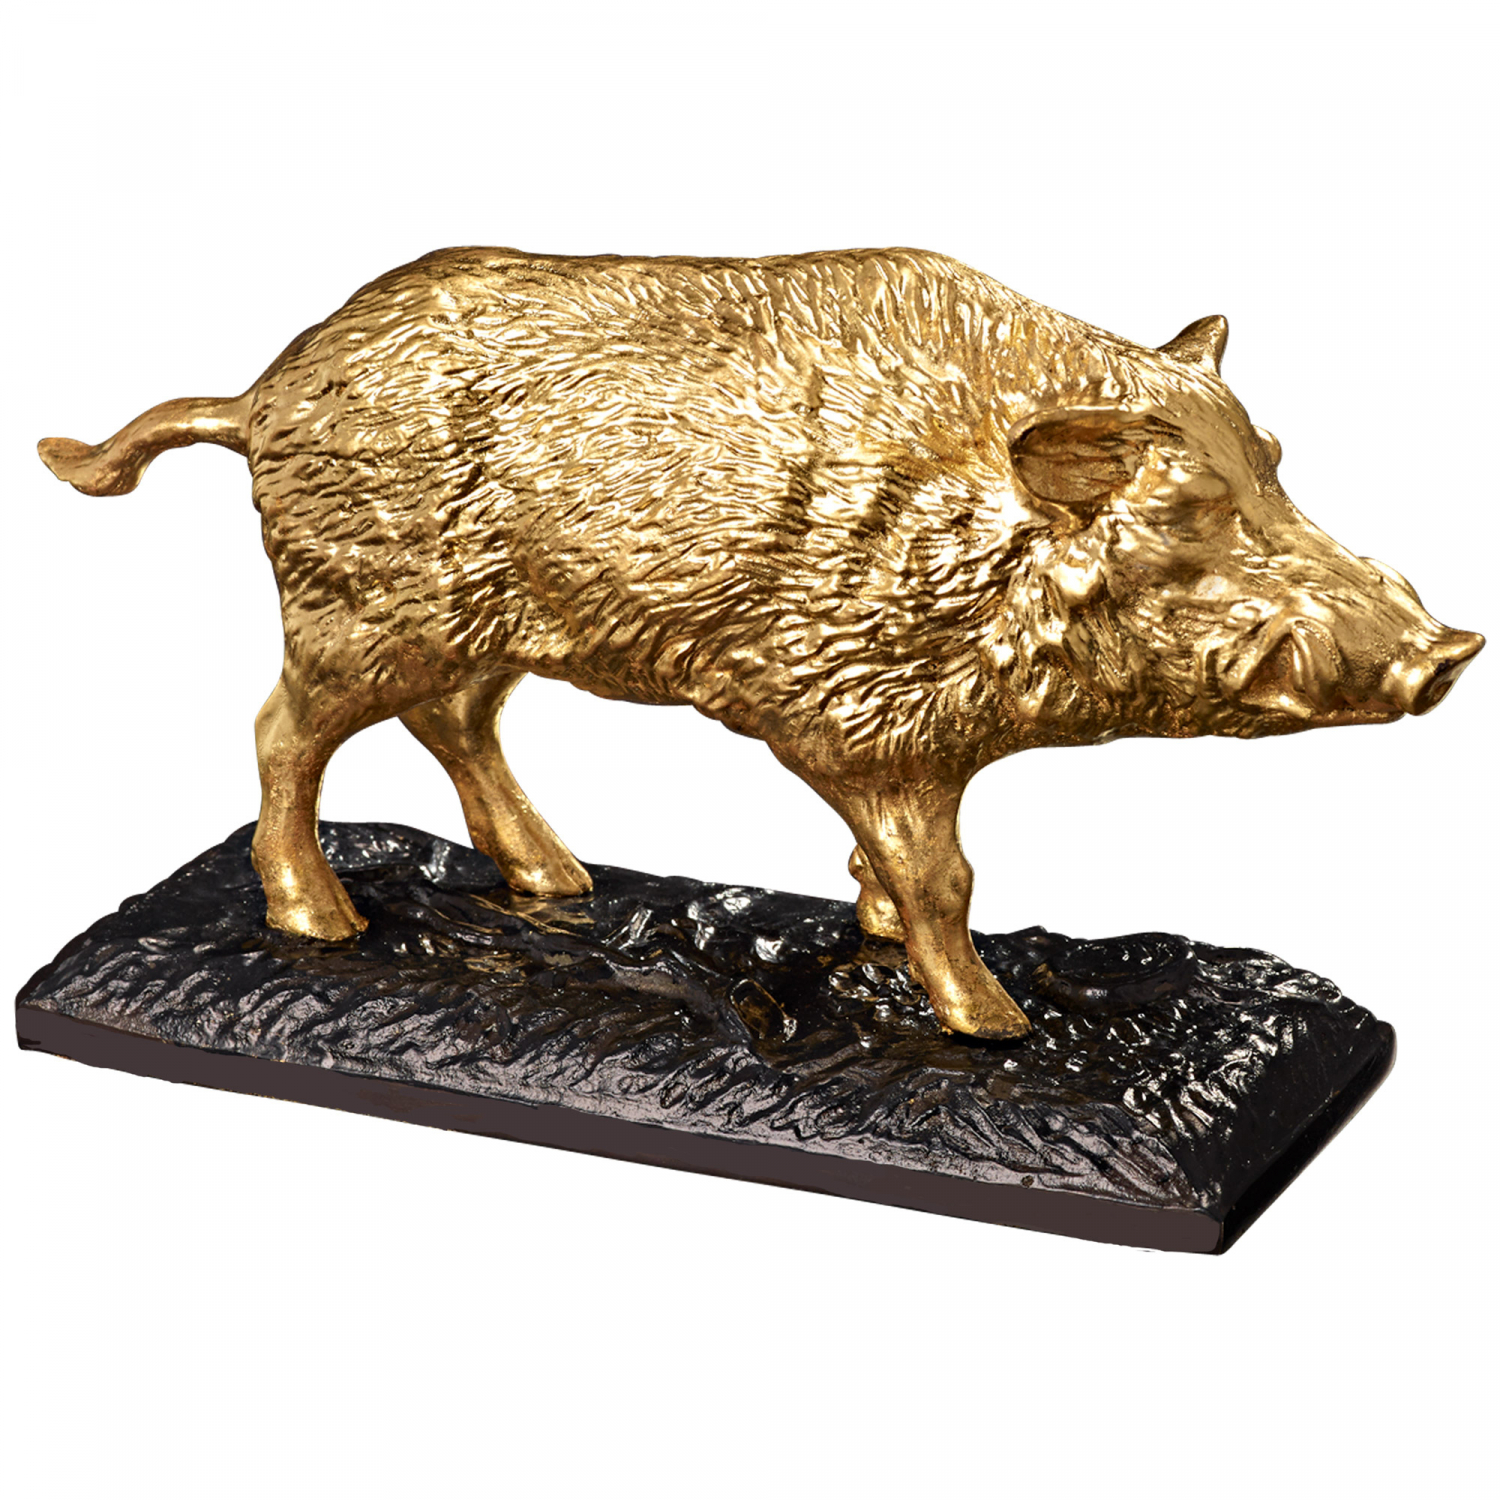 Massive, fine bronze-gold sculpture "Wild Boar" 